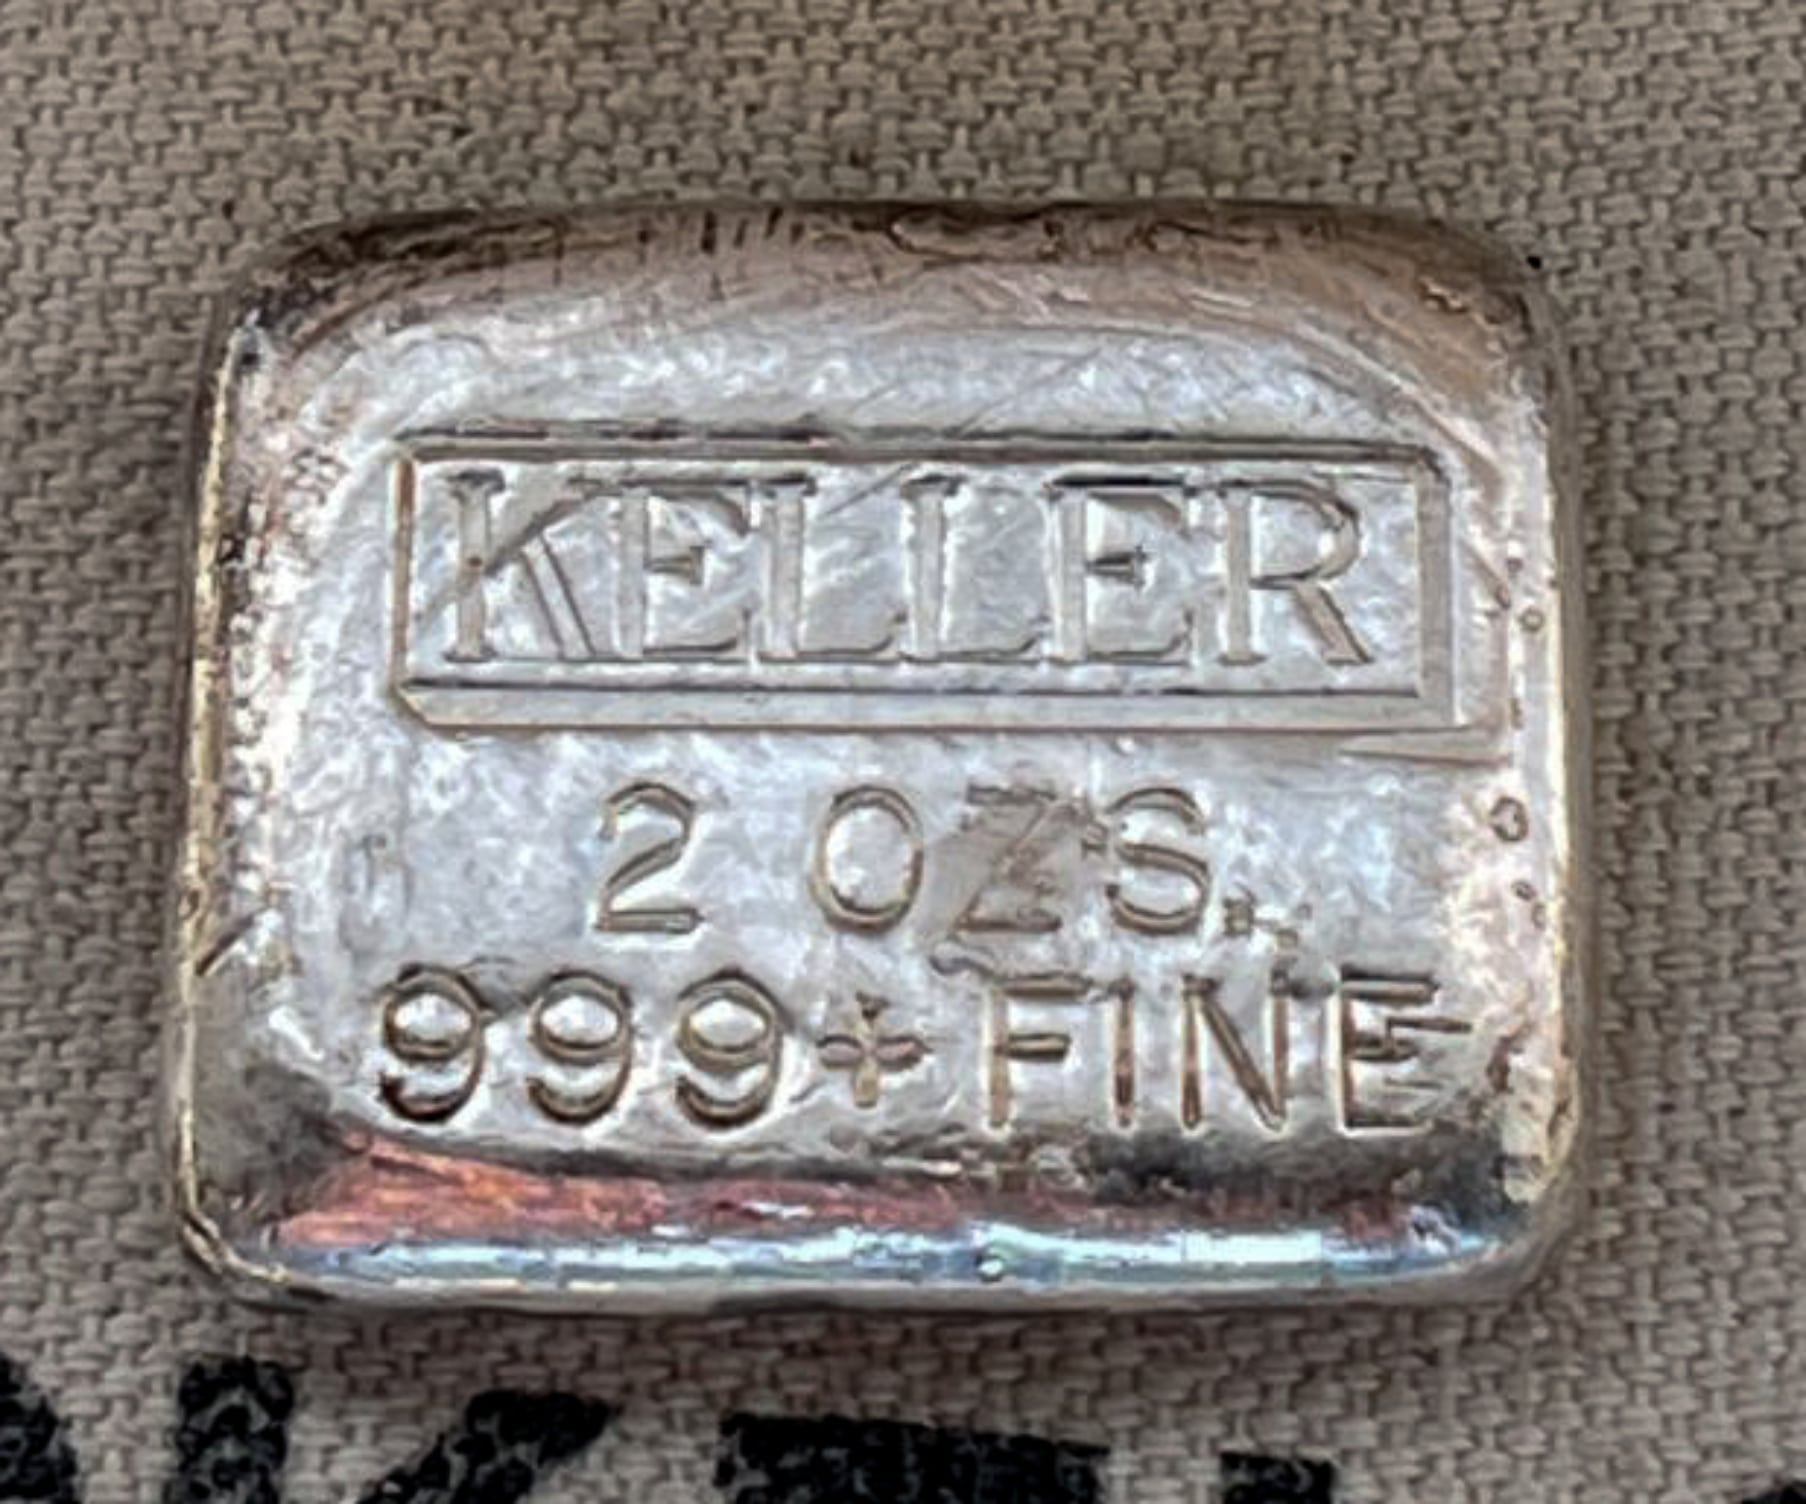 Keller silver hallmark